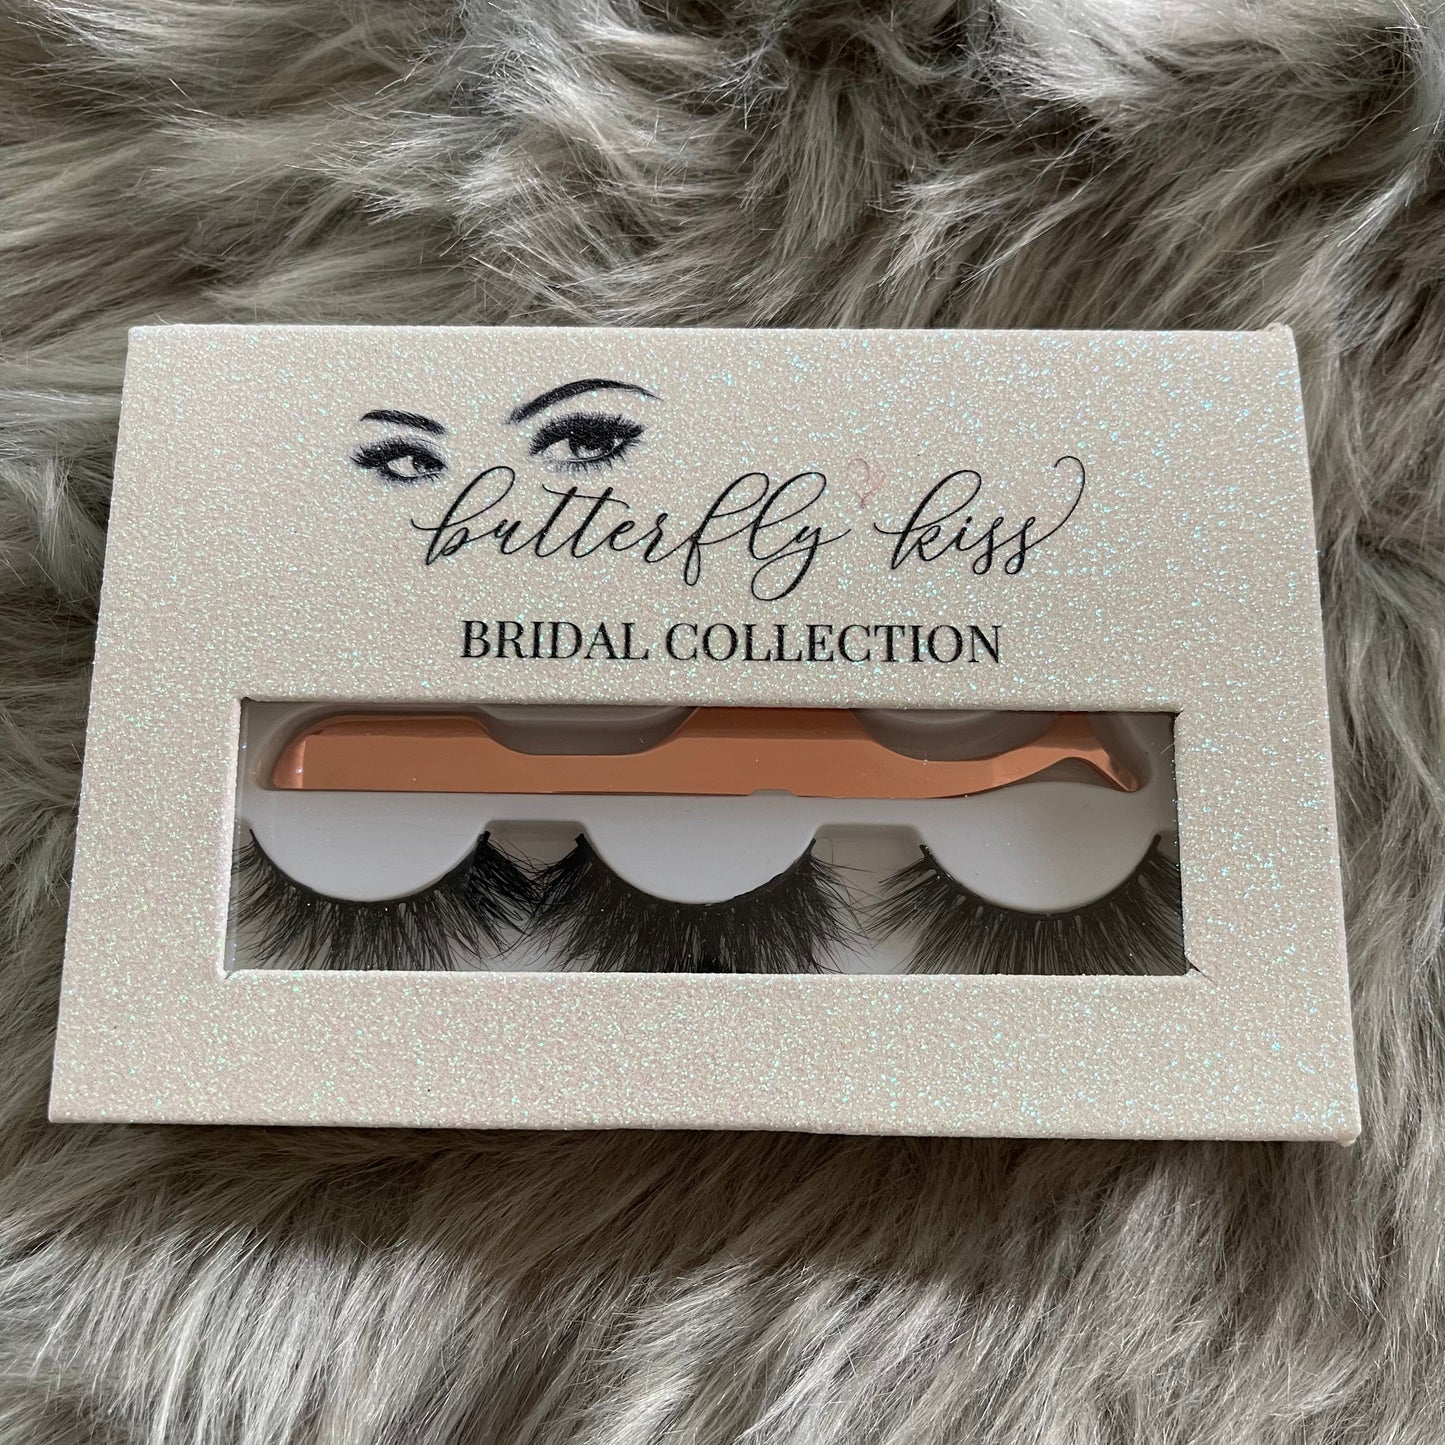 BK bridal collection lash set